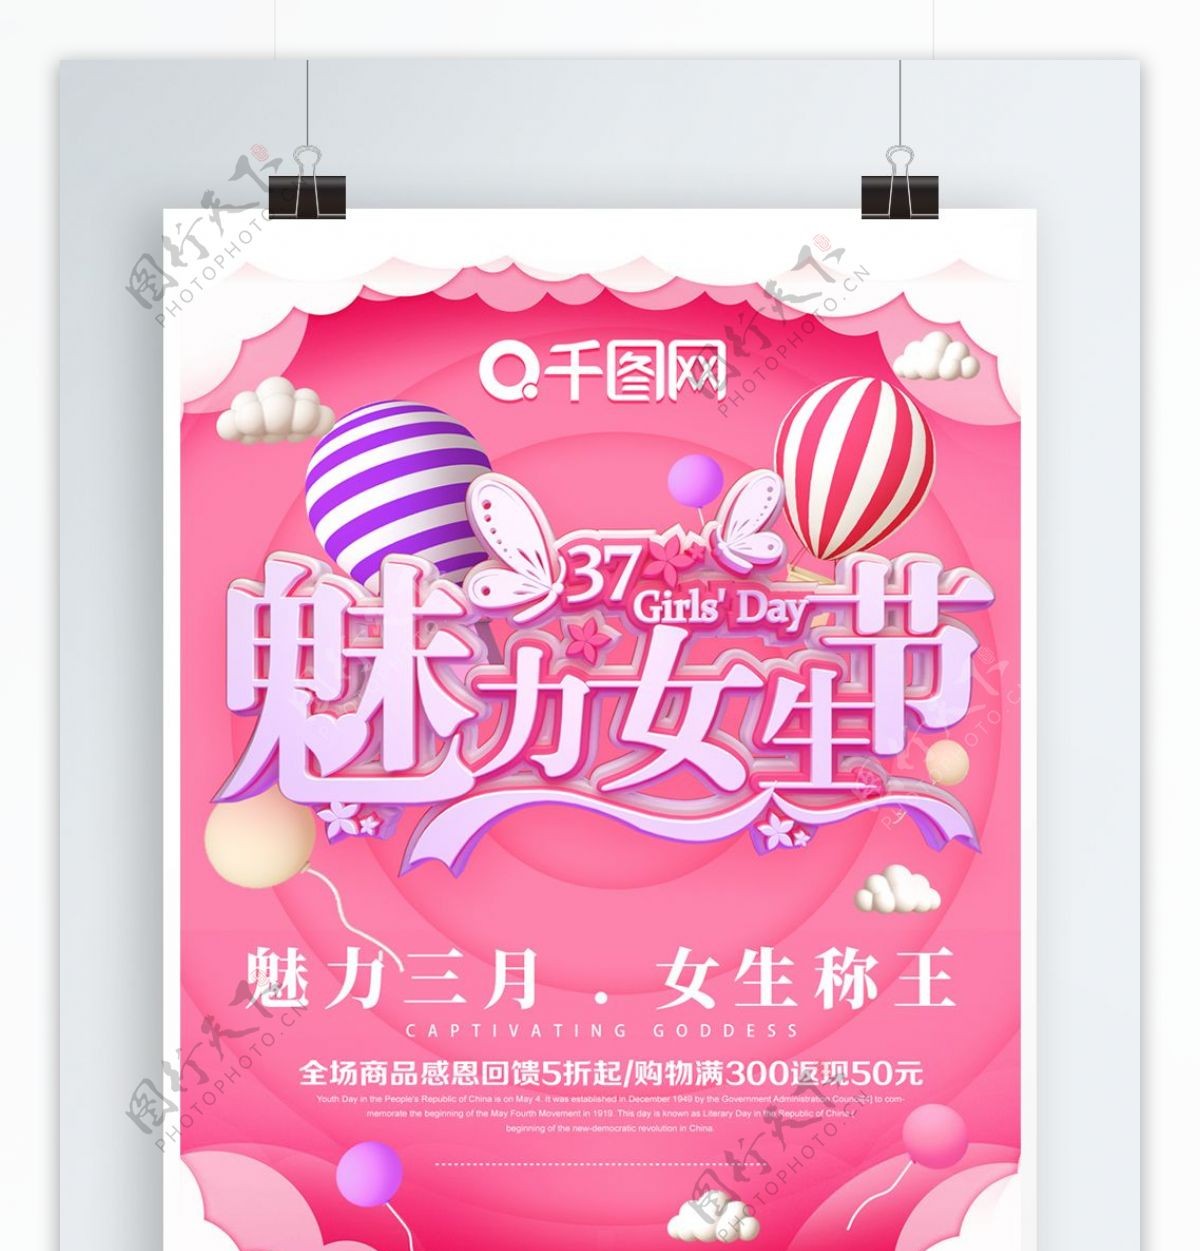 原创粉色气球C4D魅力女生节促销海报